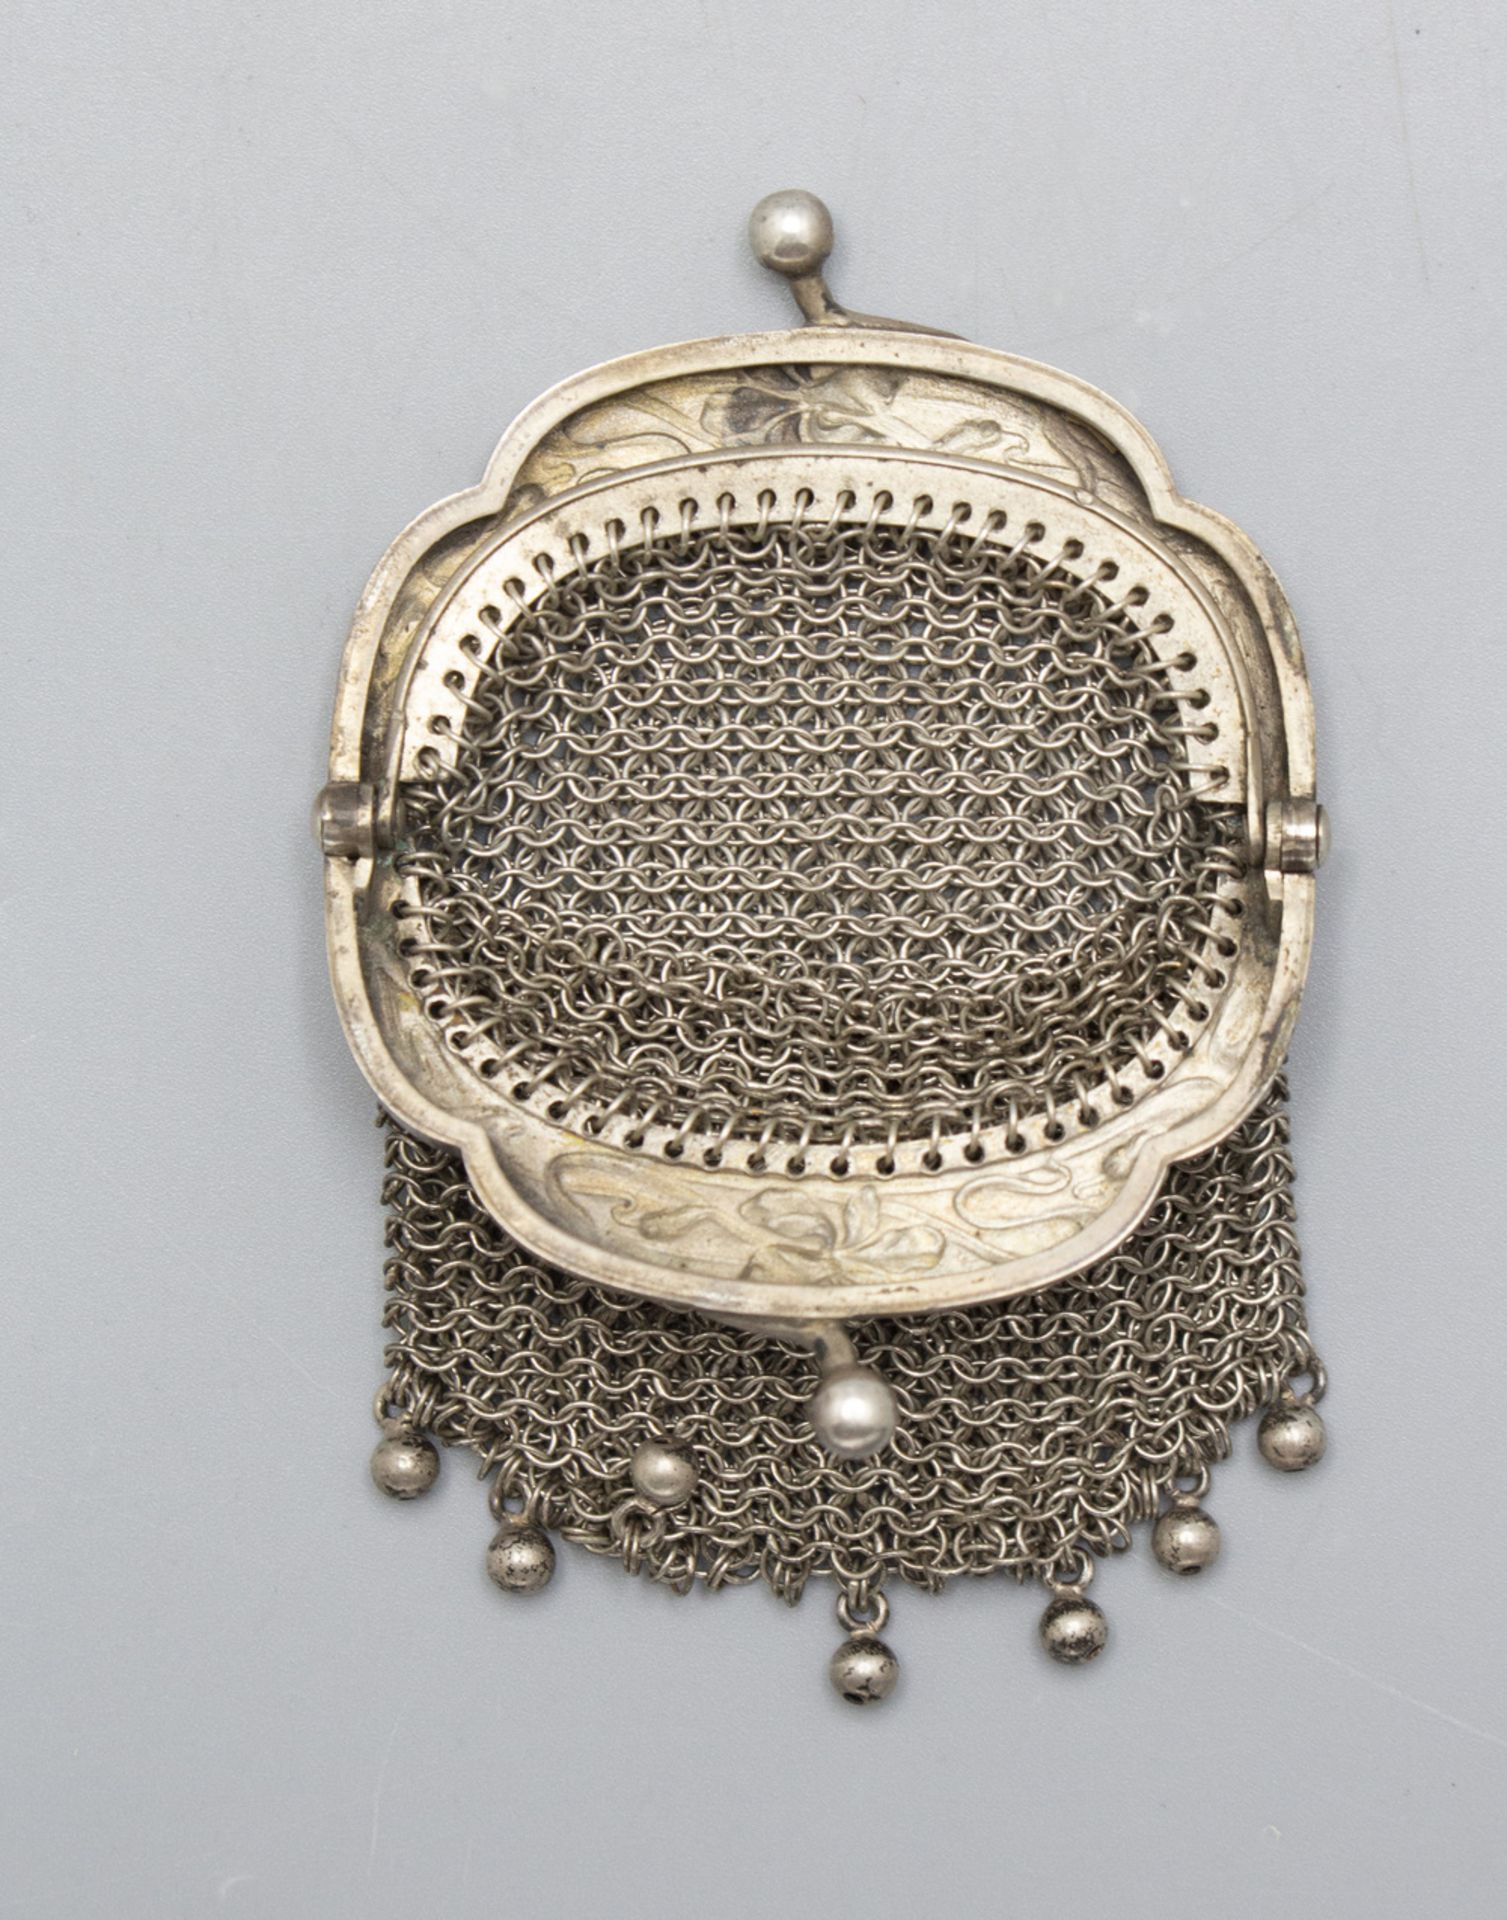 Kleine Jugendstil Kettentasche mit Schwertlilien / Börse / A small Art Nouveau silver purse ... - Image 3 of 3